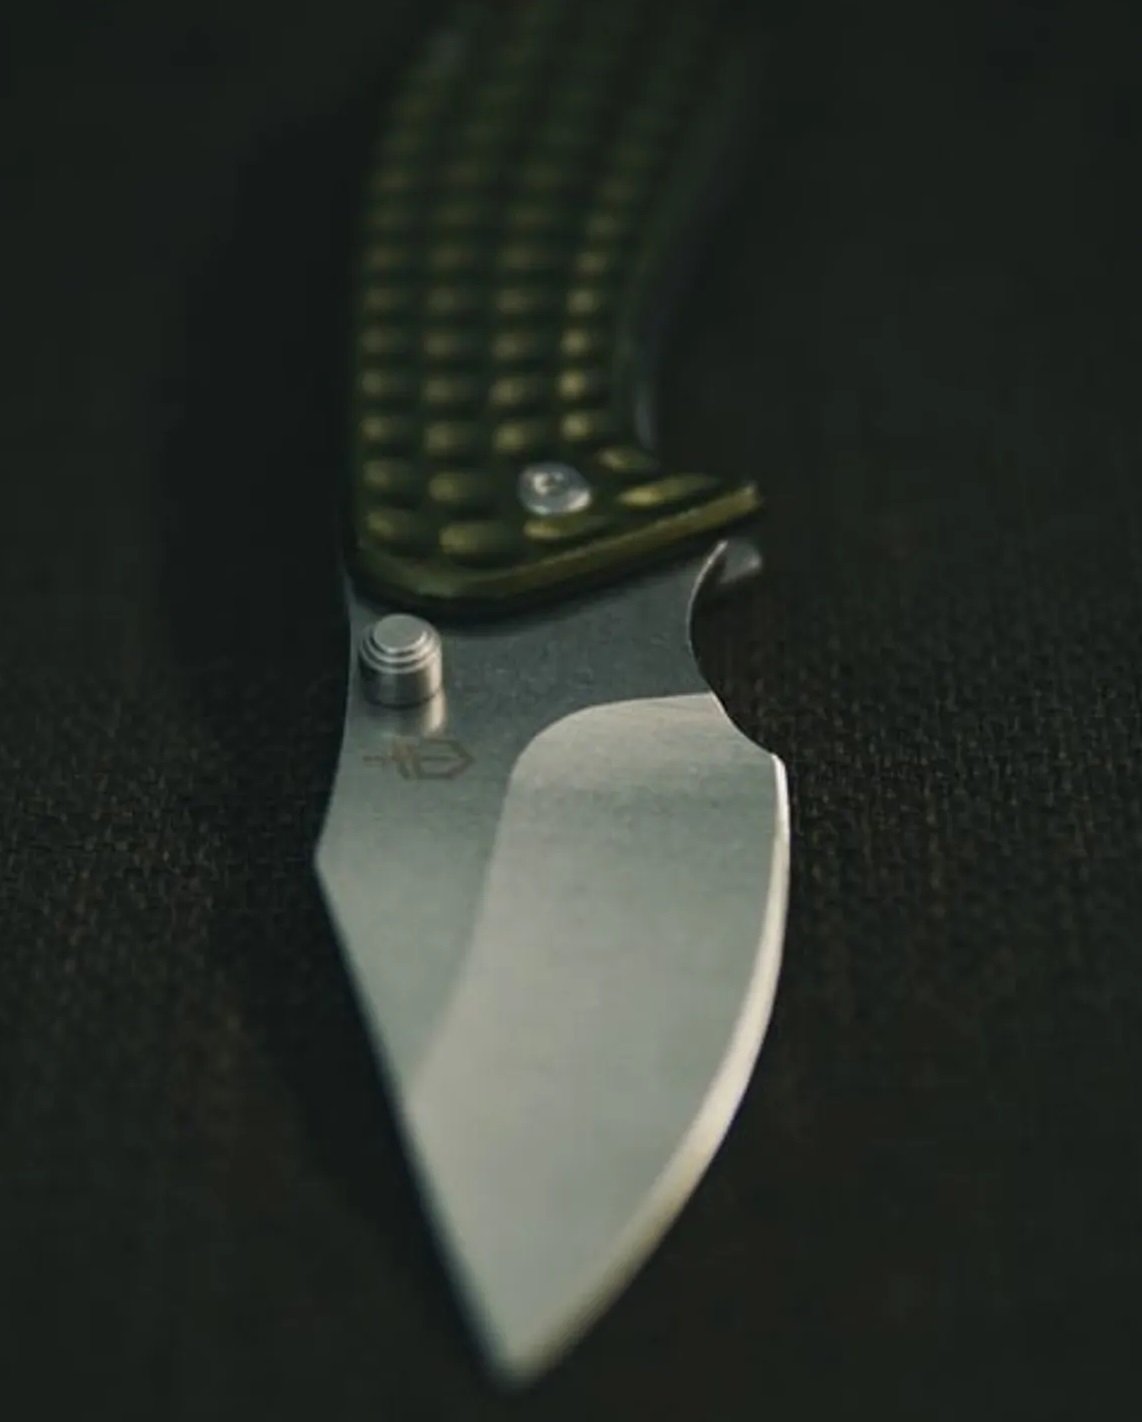 Un cuchillo sobre una superficie oscura. | Foto: Unsplash